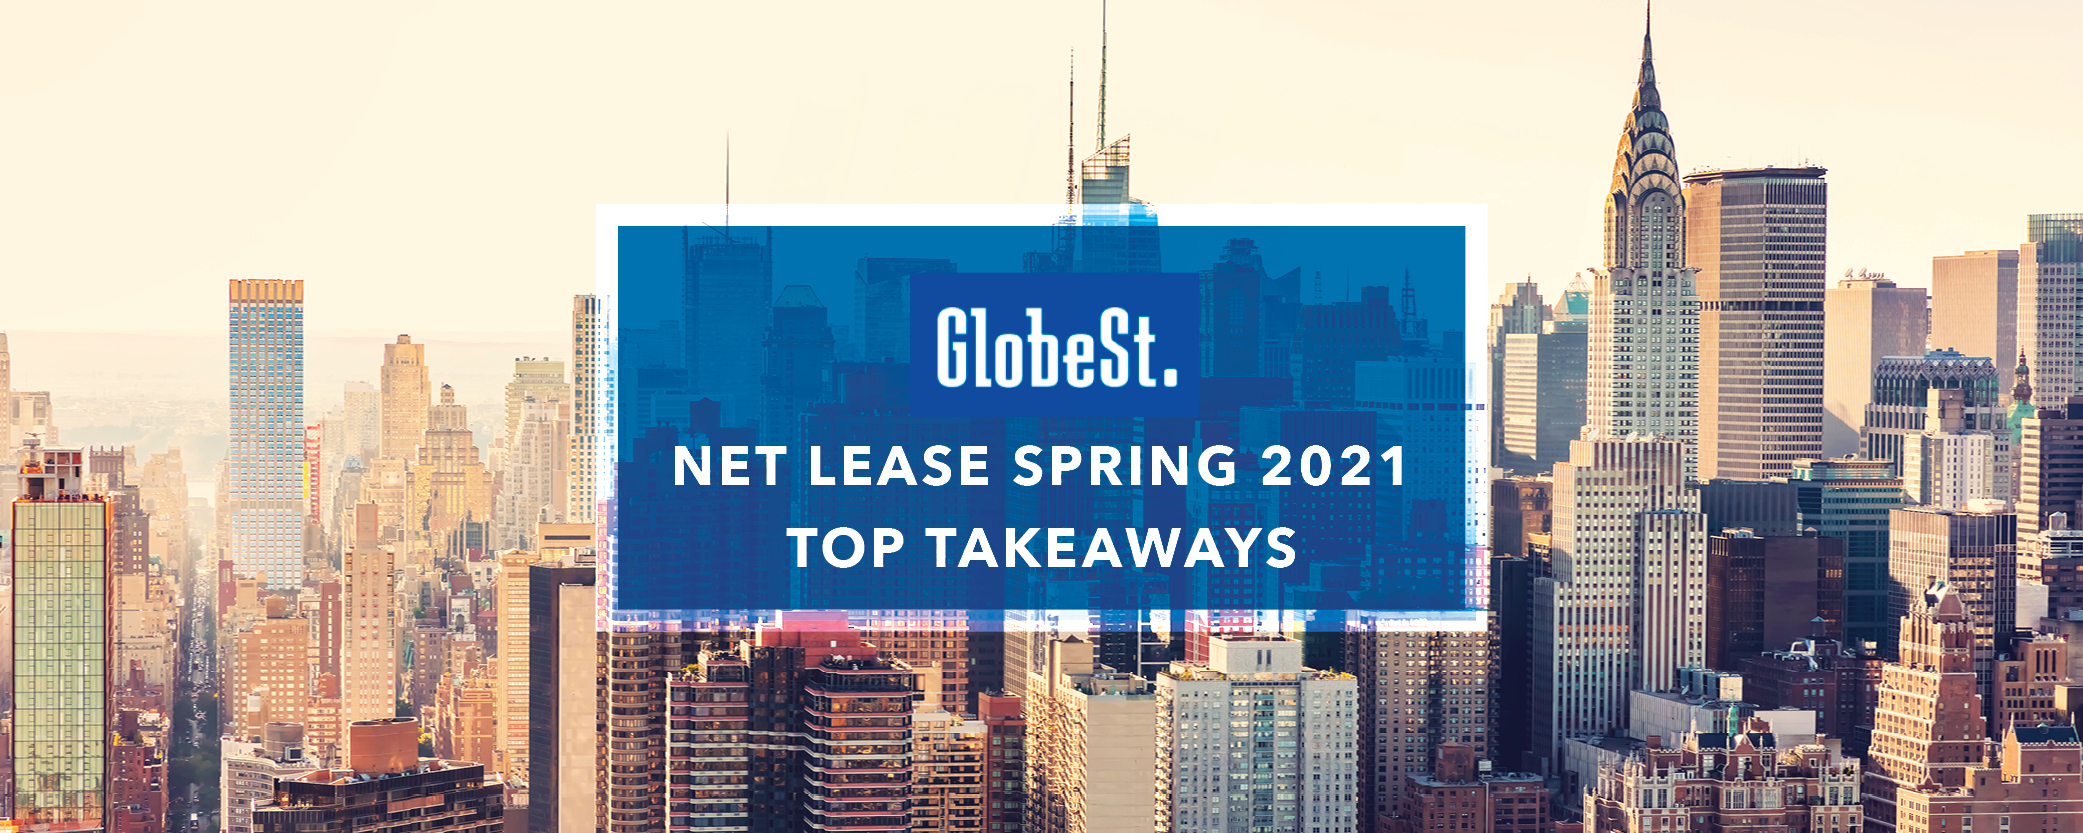 Top Takeaways: GlobeSt. Net Lease Spring 2021